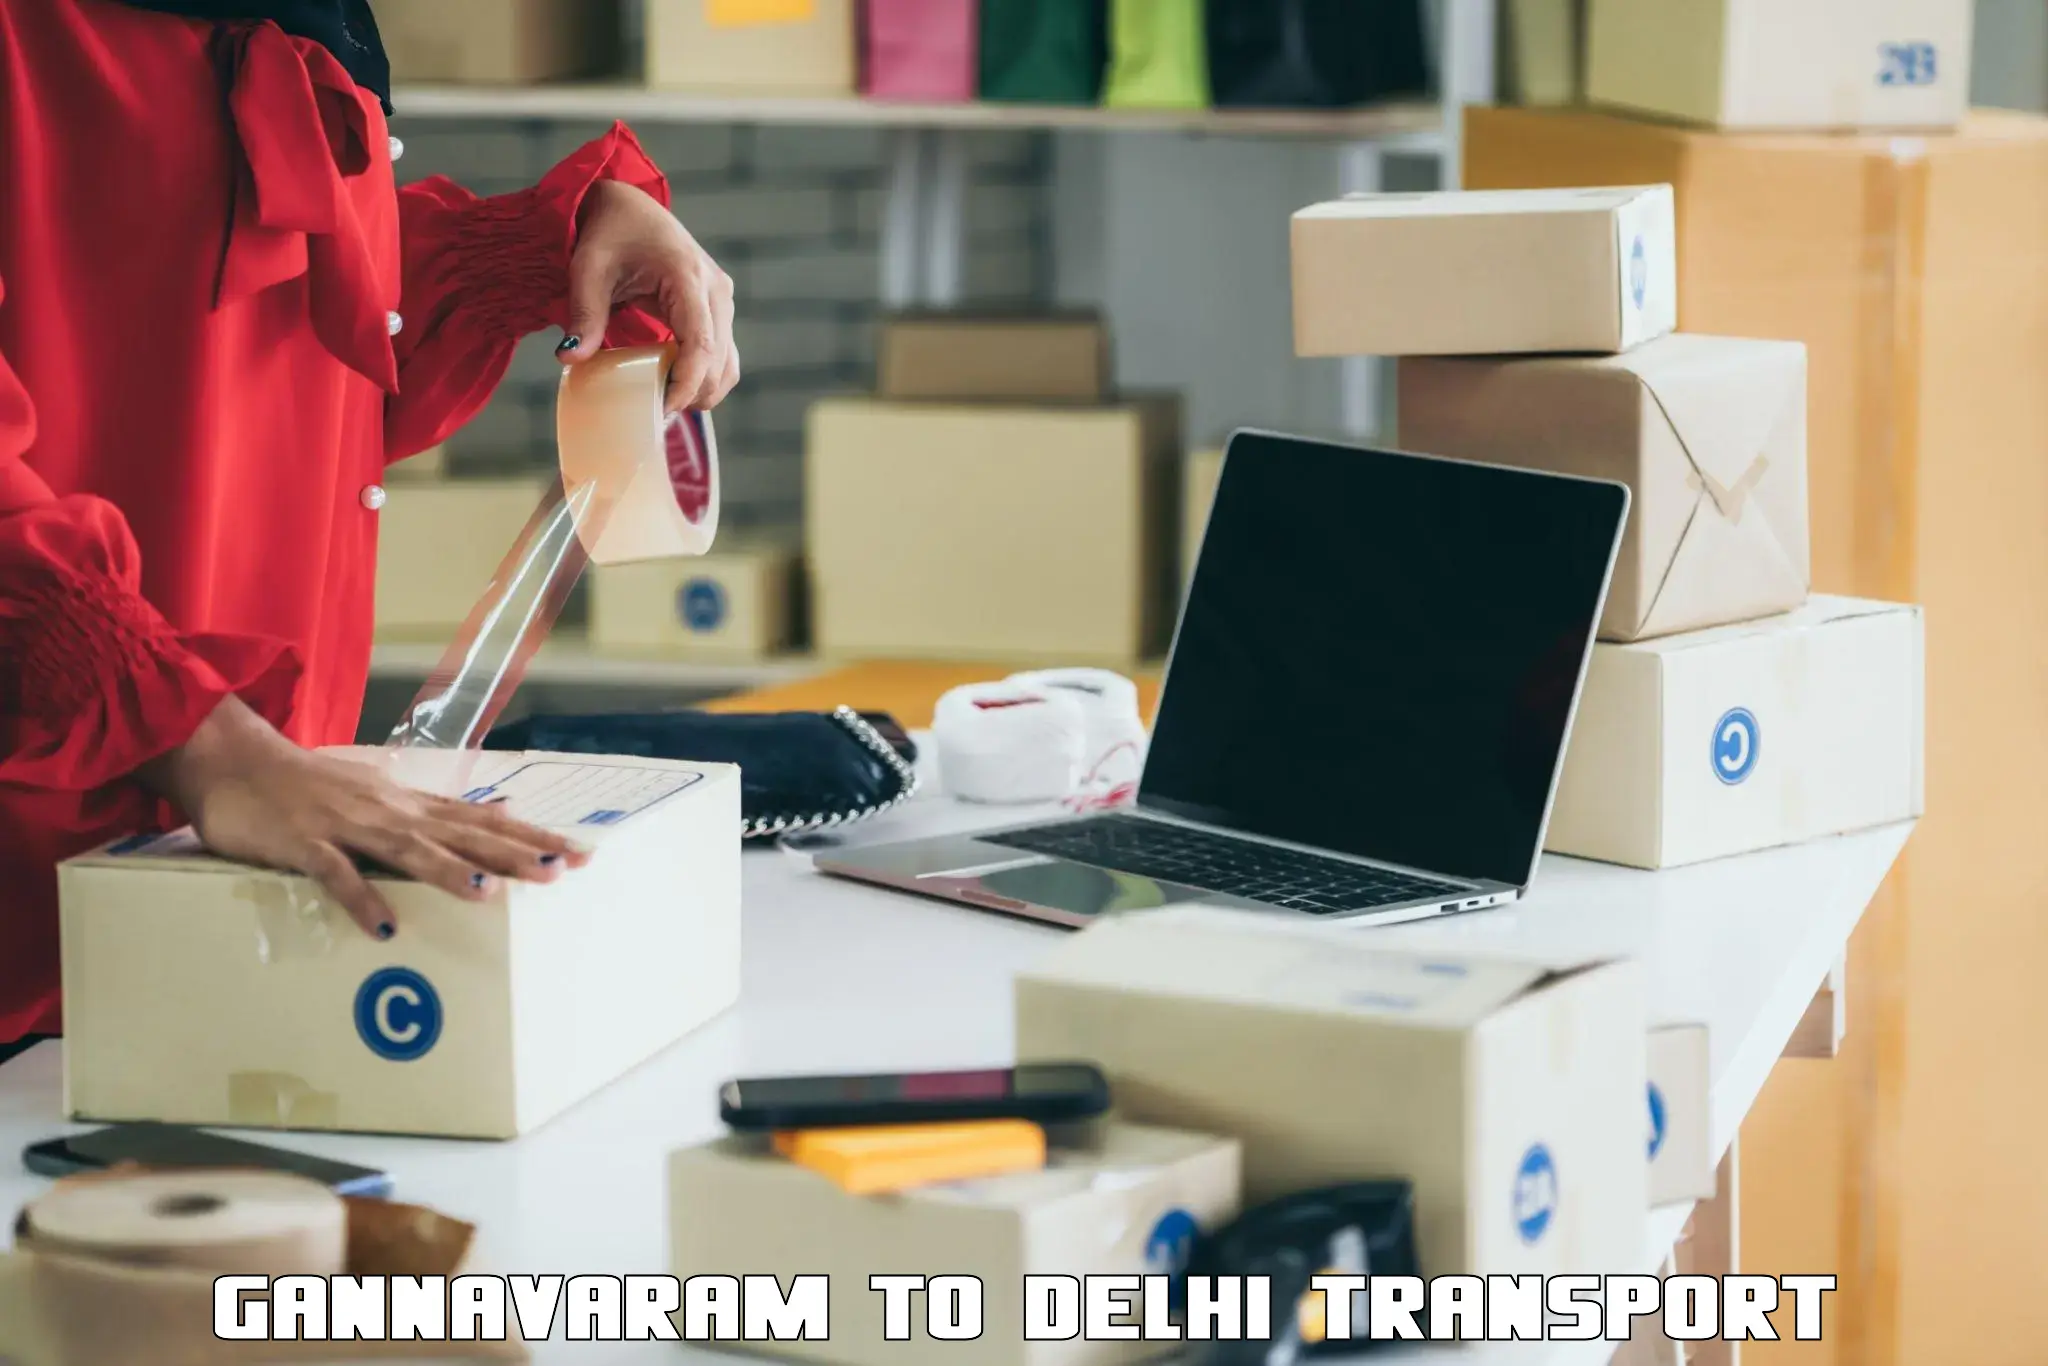 Shipping partner Gannavaram to Delhi